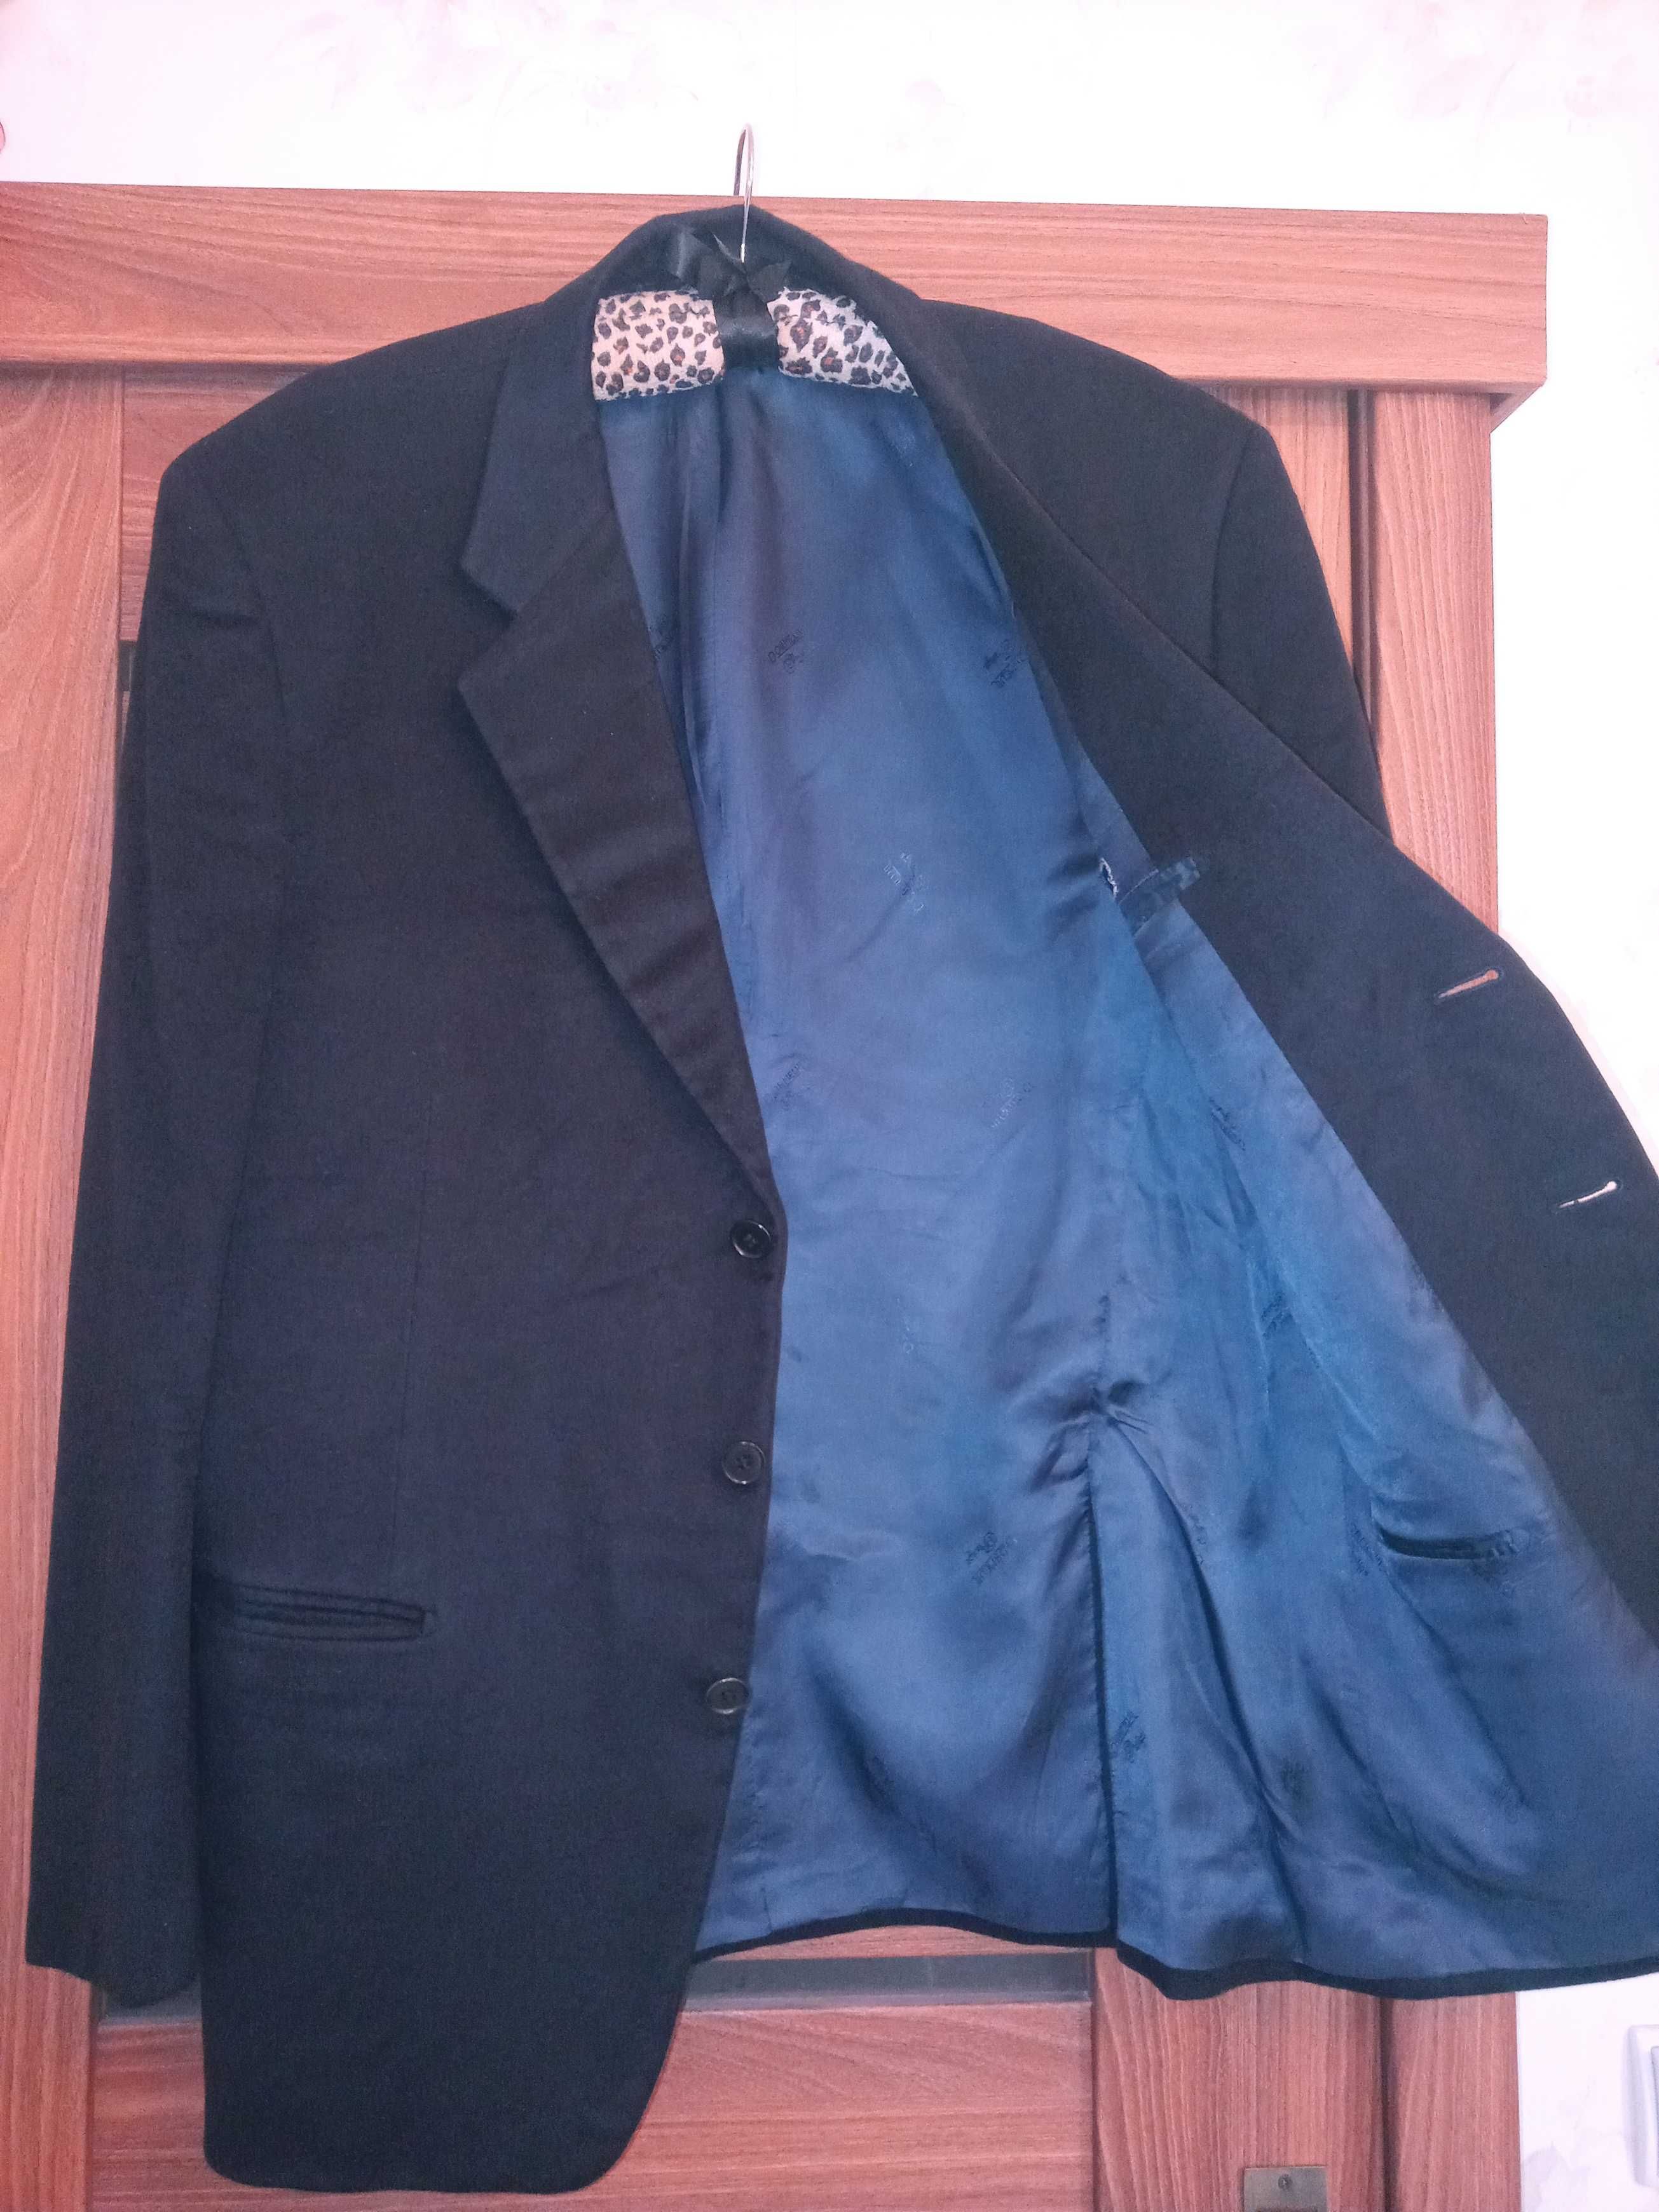 Marynarka DORMEUIL Prestige Man Jacket Blazer. Rozm.52. 100% kaszmir.